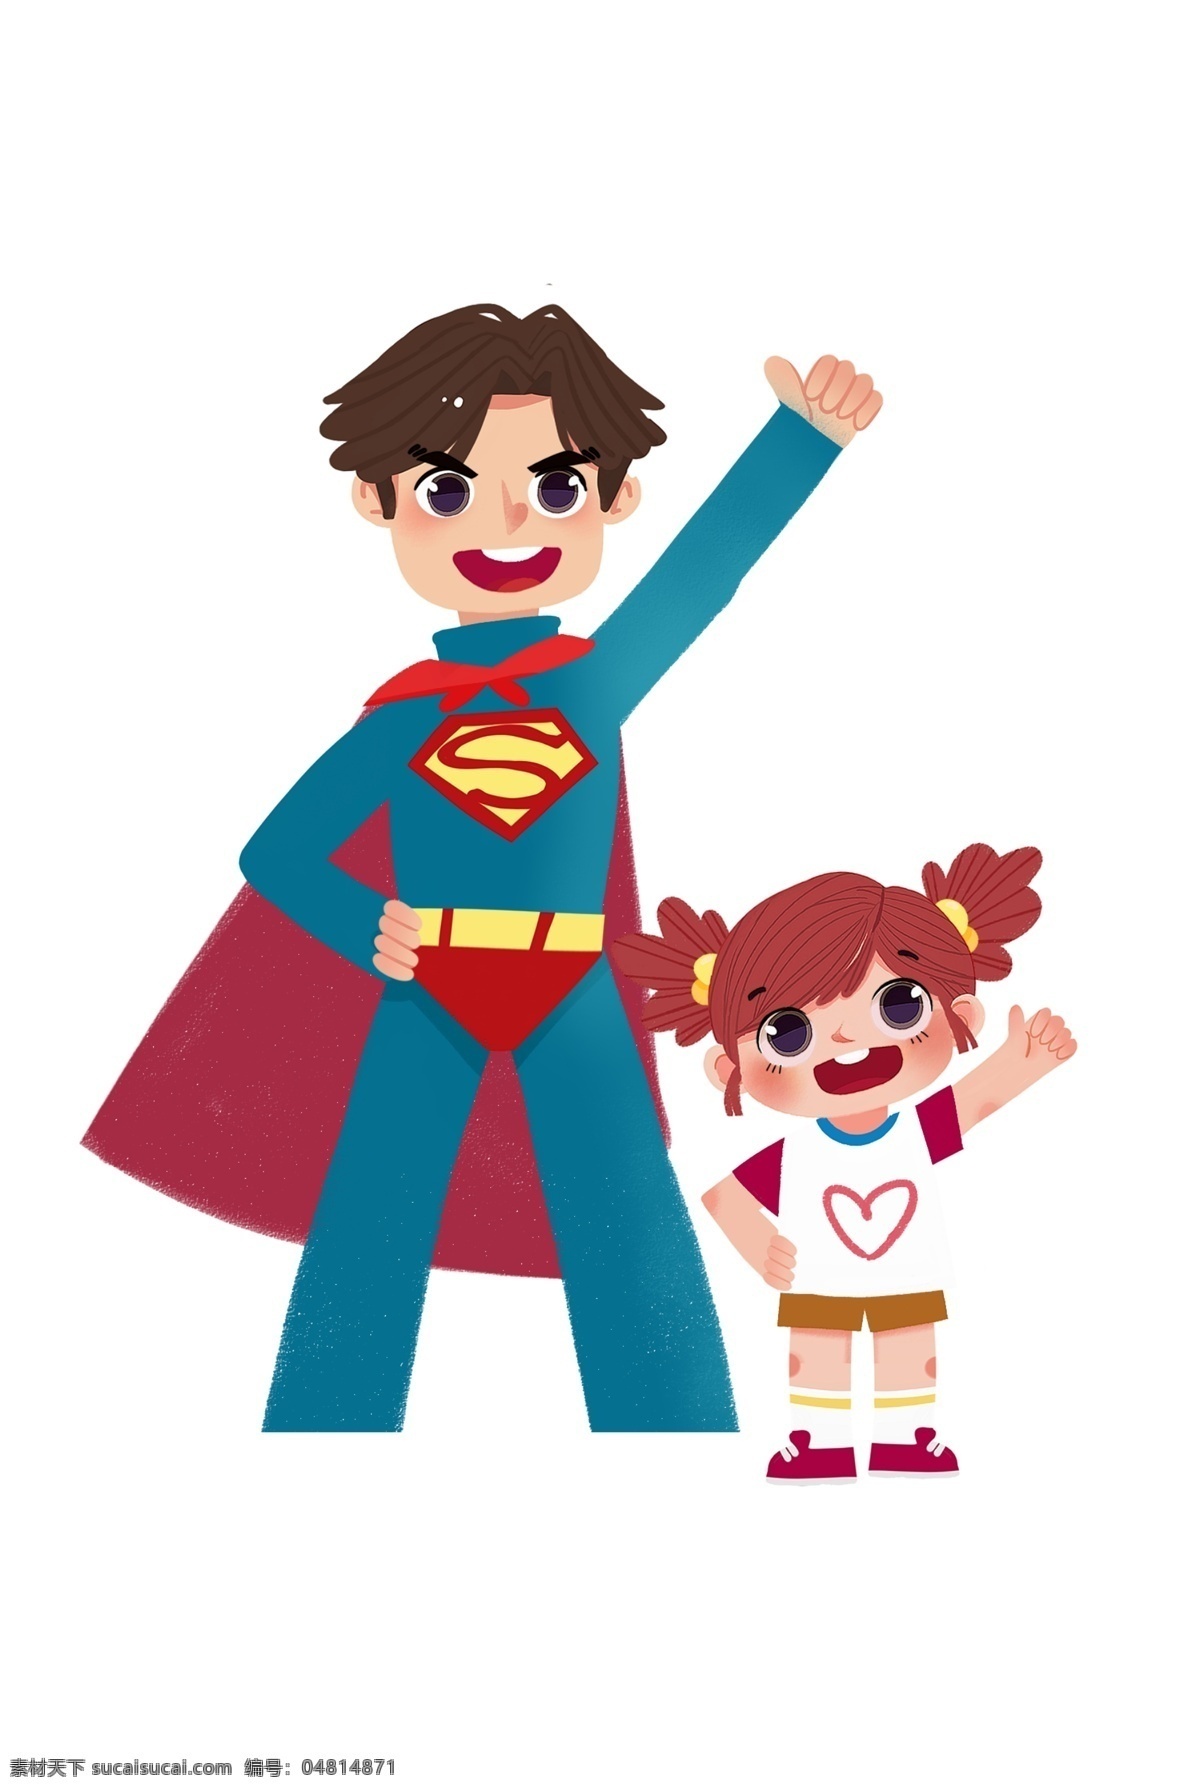 超人爸爸元素 超人 女孩 爸爸 父亲节素材 卡通人物 超人爸爸 父女 元素设计